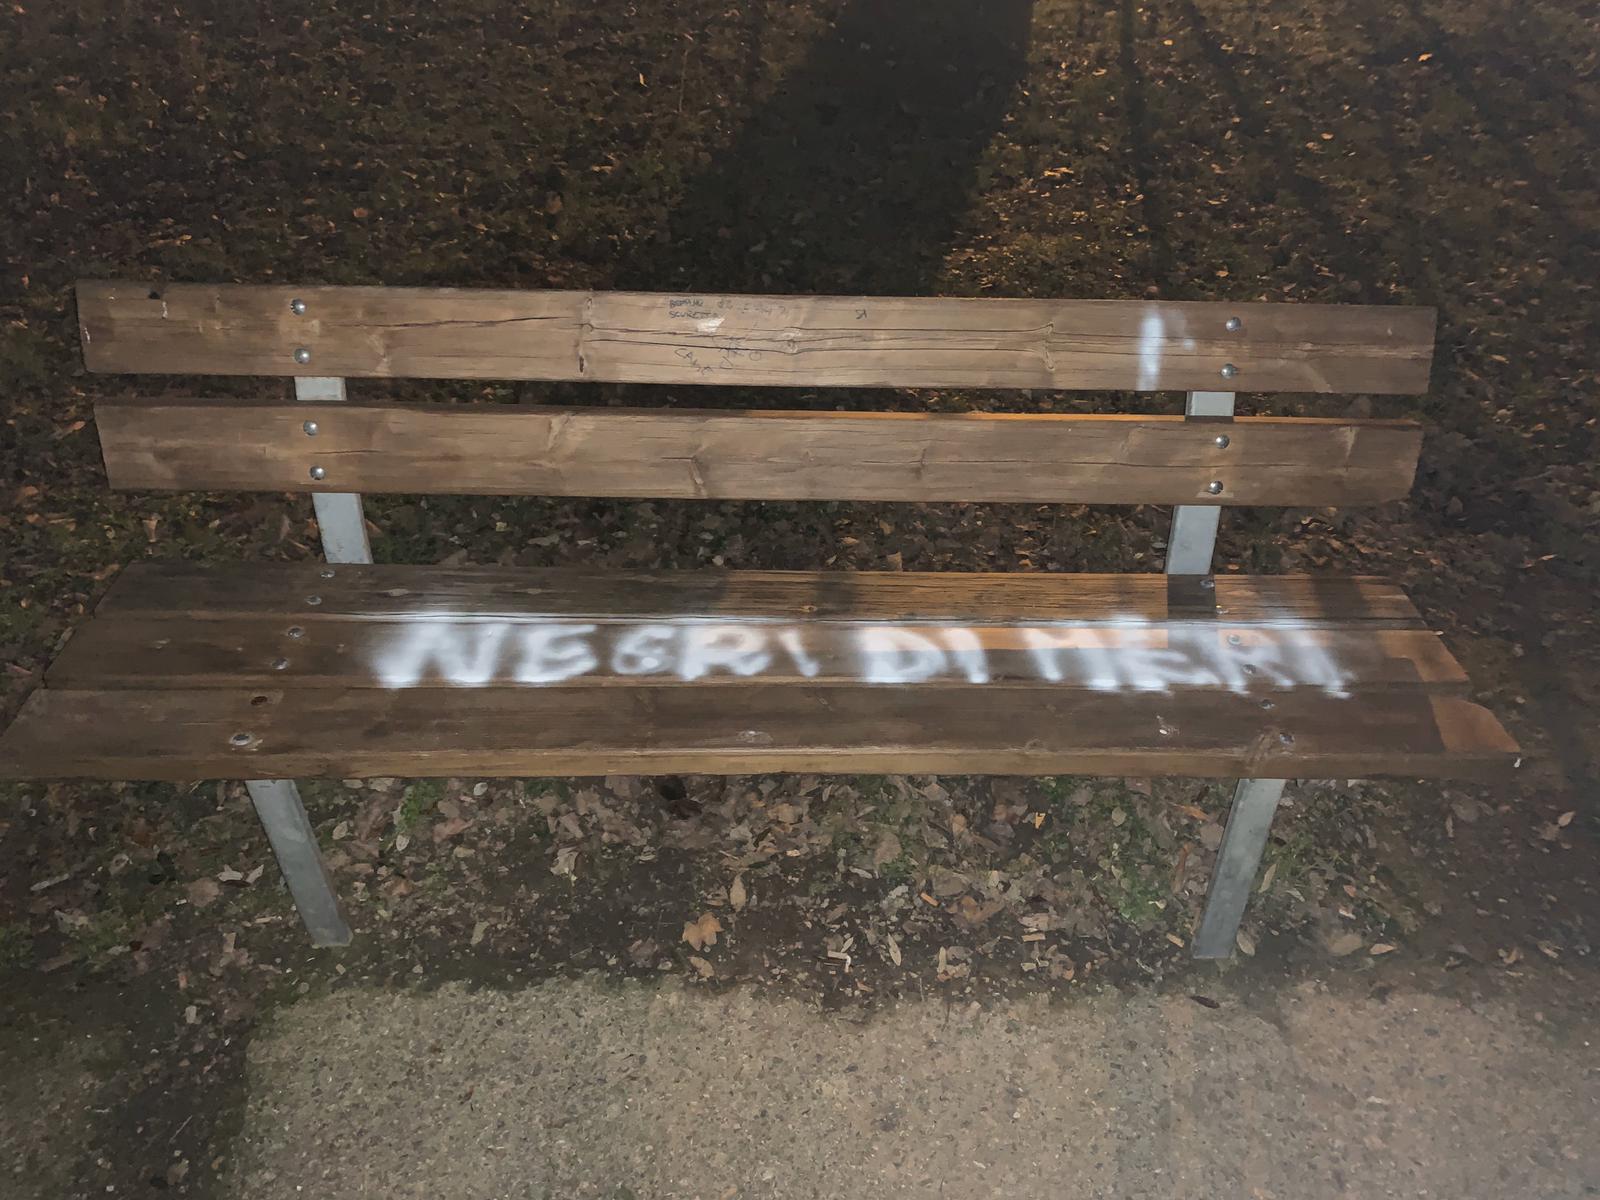 Scritta razzista su una panchina al parco Giotto. Svastica su altre due